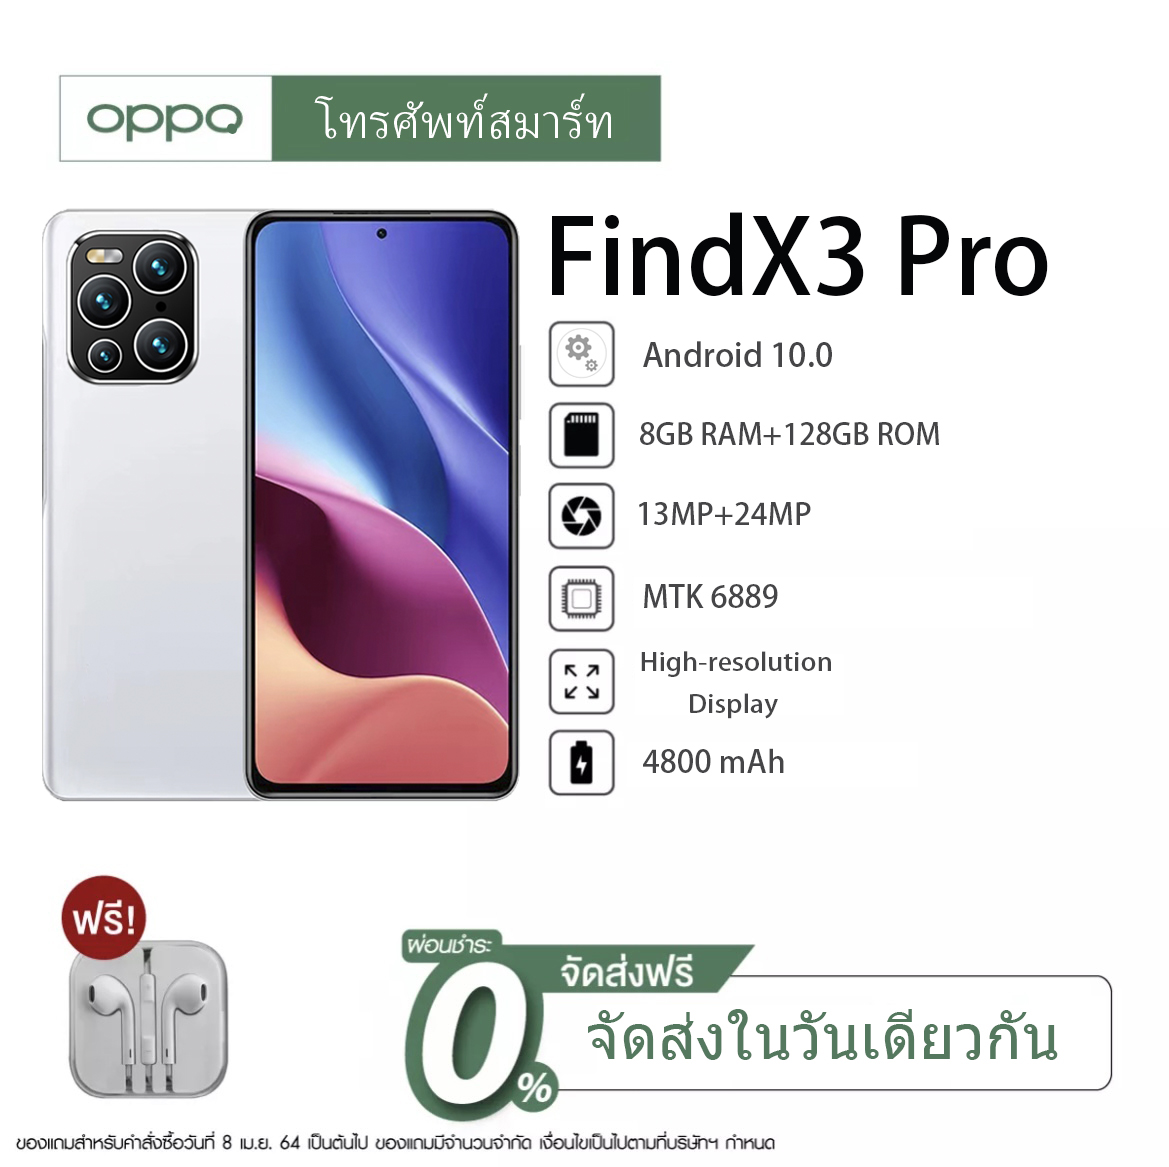 โทรศัพท์มือถือราคาถูก OPPQ Find X3 Pro สมาร์ทโฟน 6.1 นิ้ว RAM8GB แบตเตอรี่ ROM128GB สแกนลายนิ้วมือ 4800MAh ปลดล็อคใบหน้ากล้องหน้า Full HD กล้องหลัง 13MP 24MP รองรับซิมการ์ดประเทศไทยทั้งหมดรองรับภาษาไทย